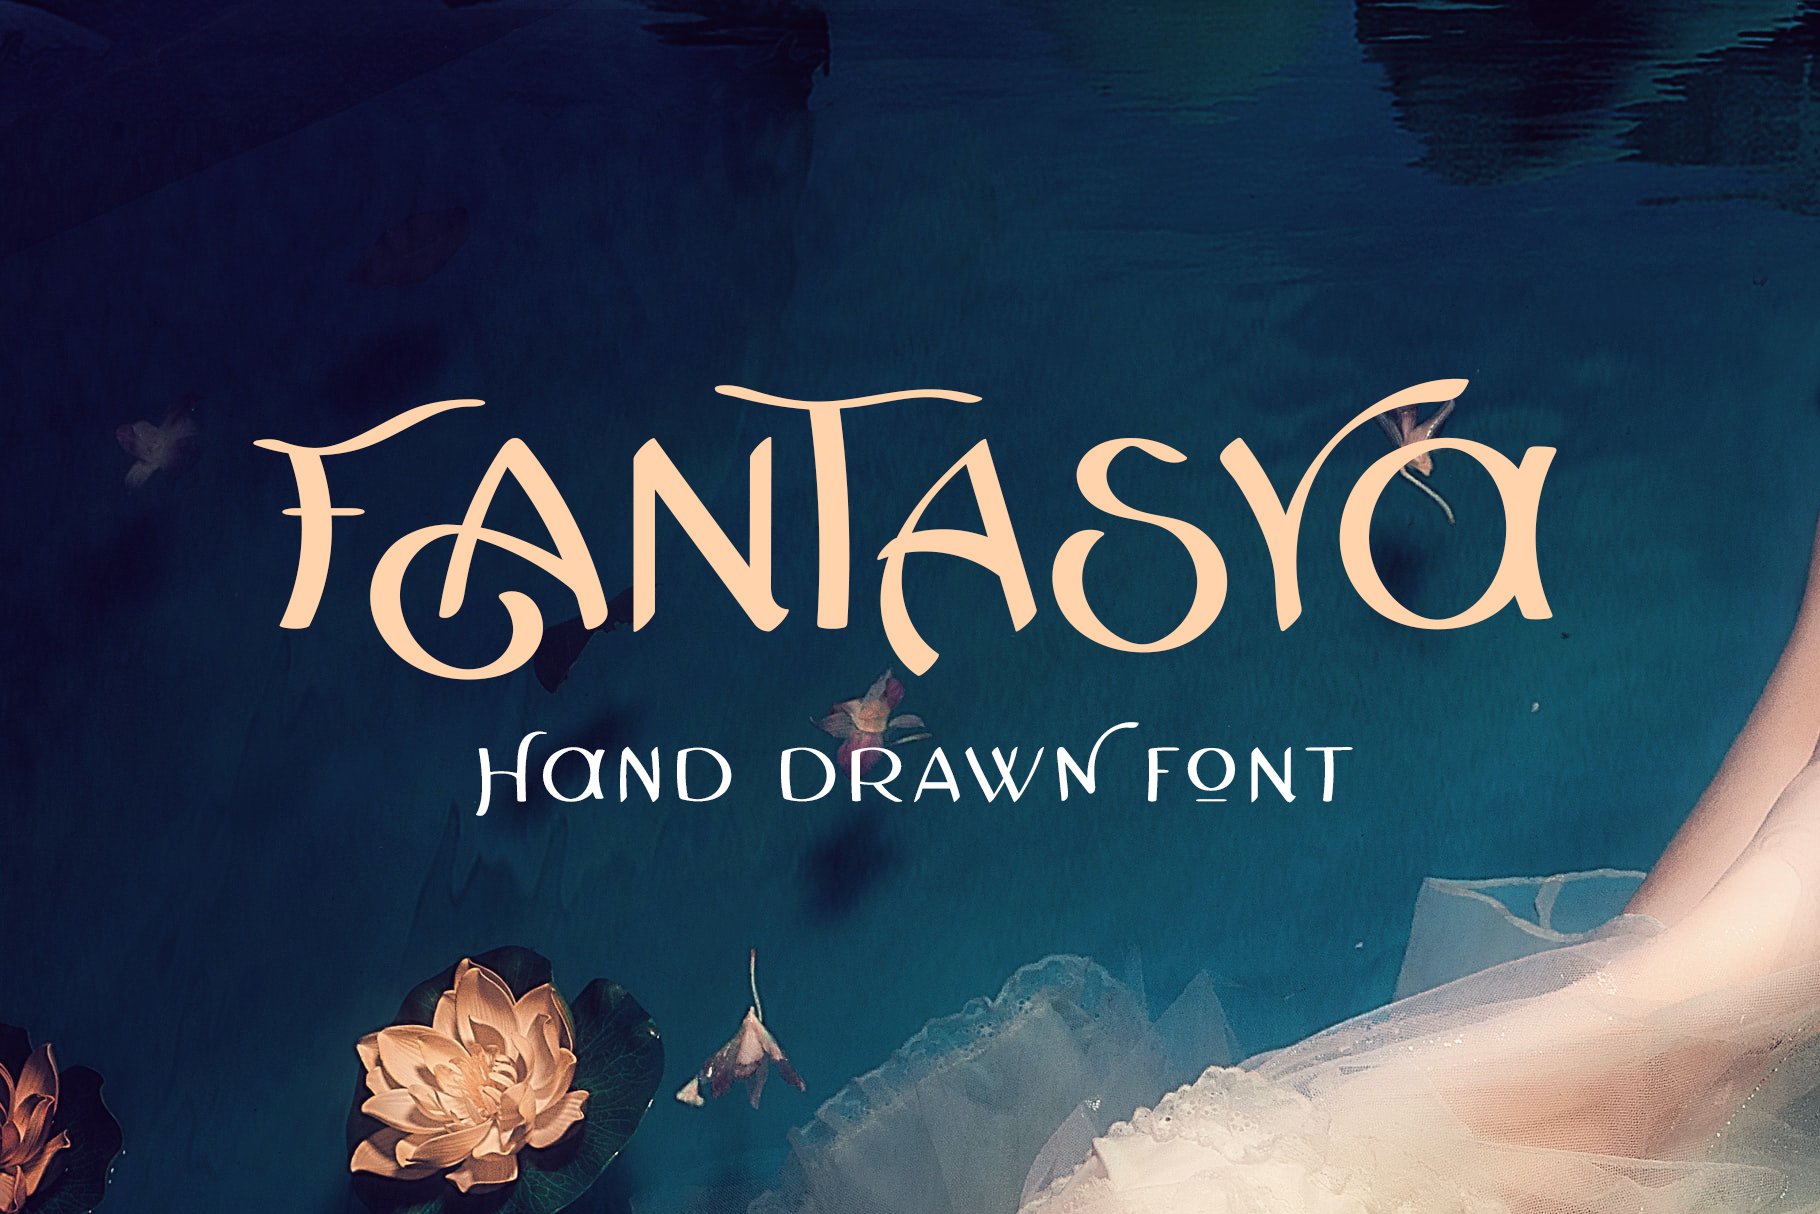 Fantasya Hand Drawn Font cover image.